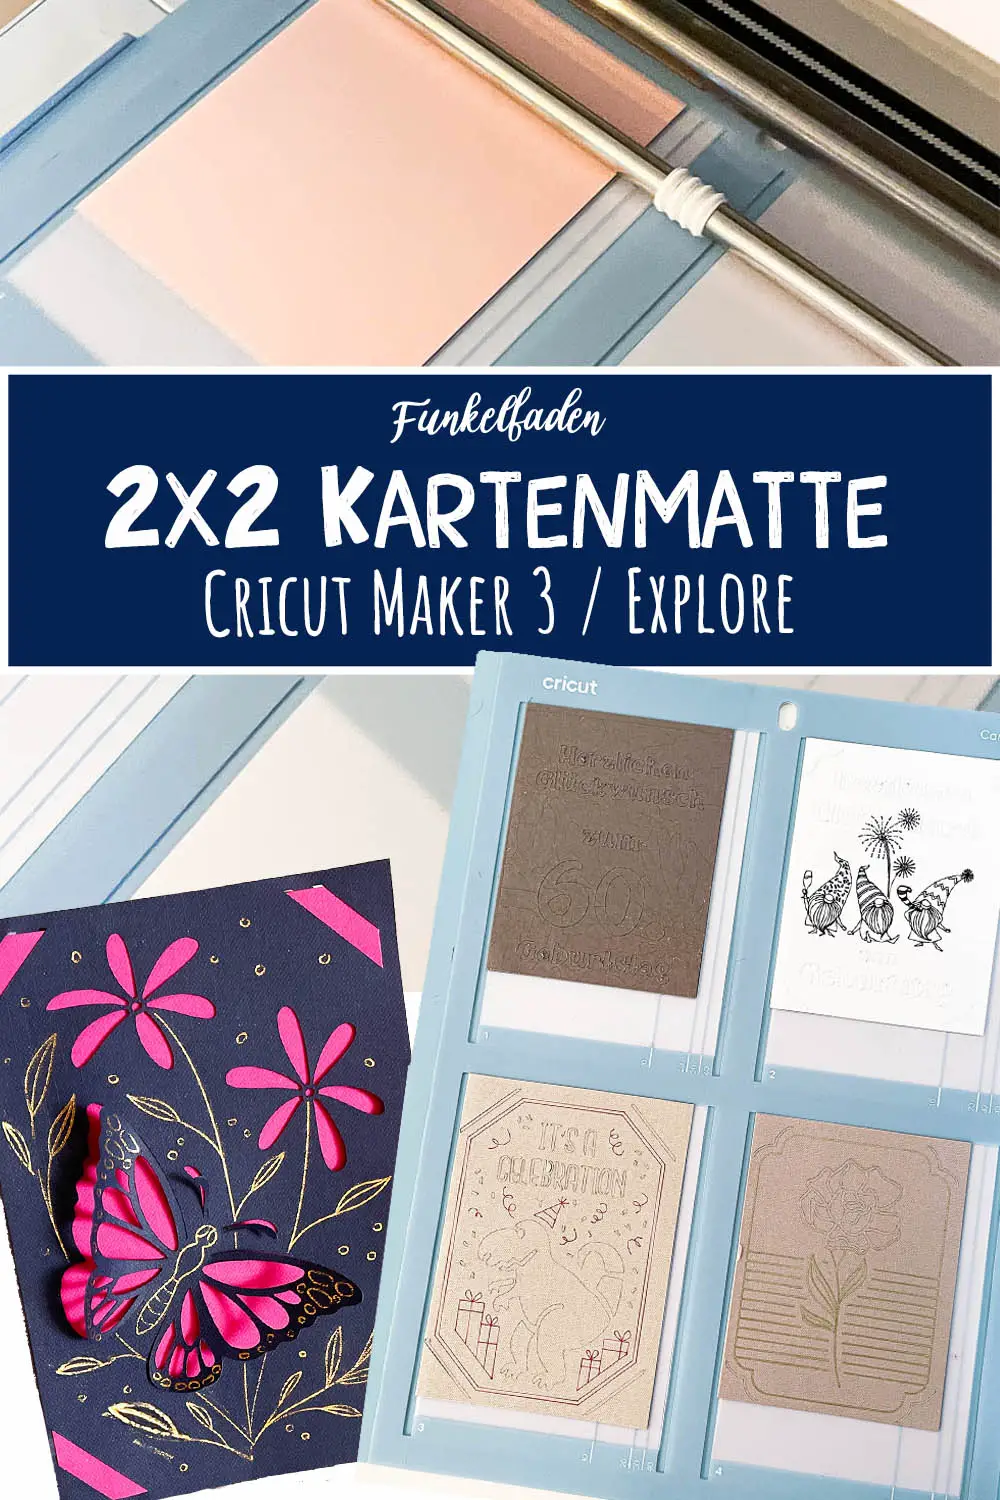 Die 2×2 Kartenmatte für Cricut Maker 3 / Explore 3